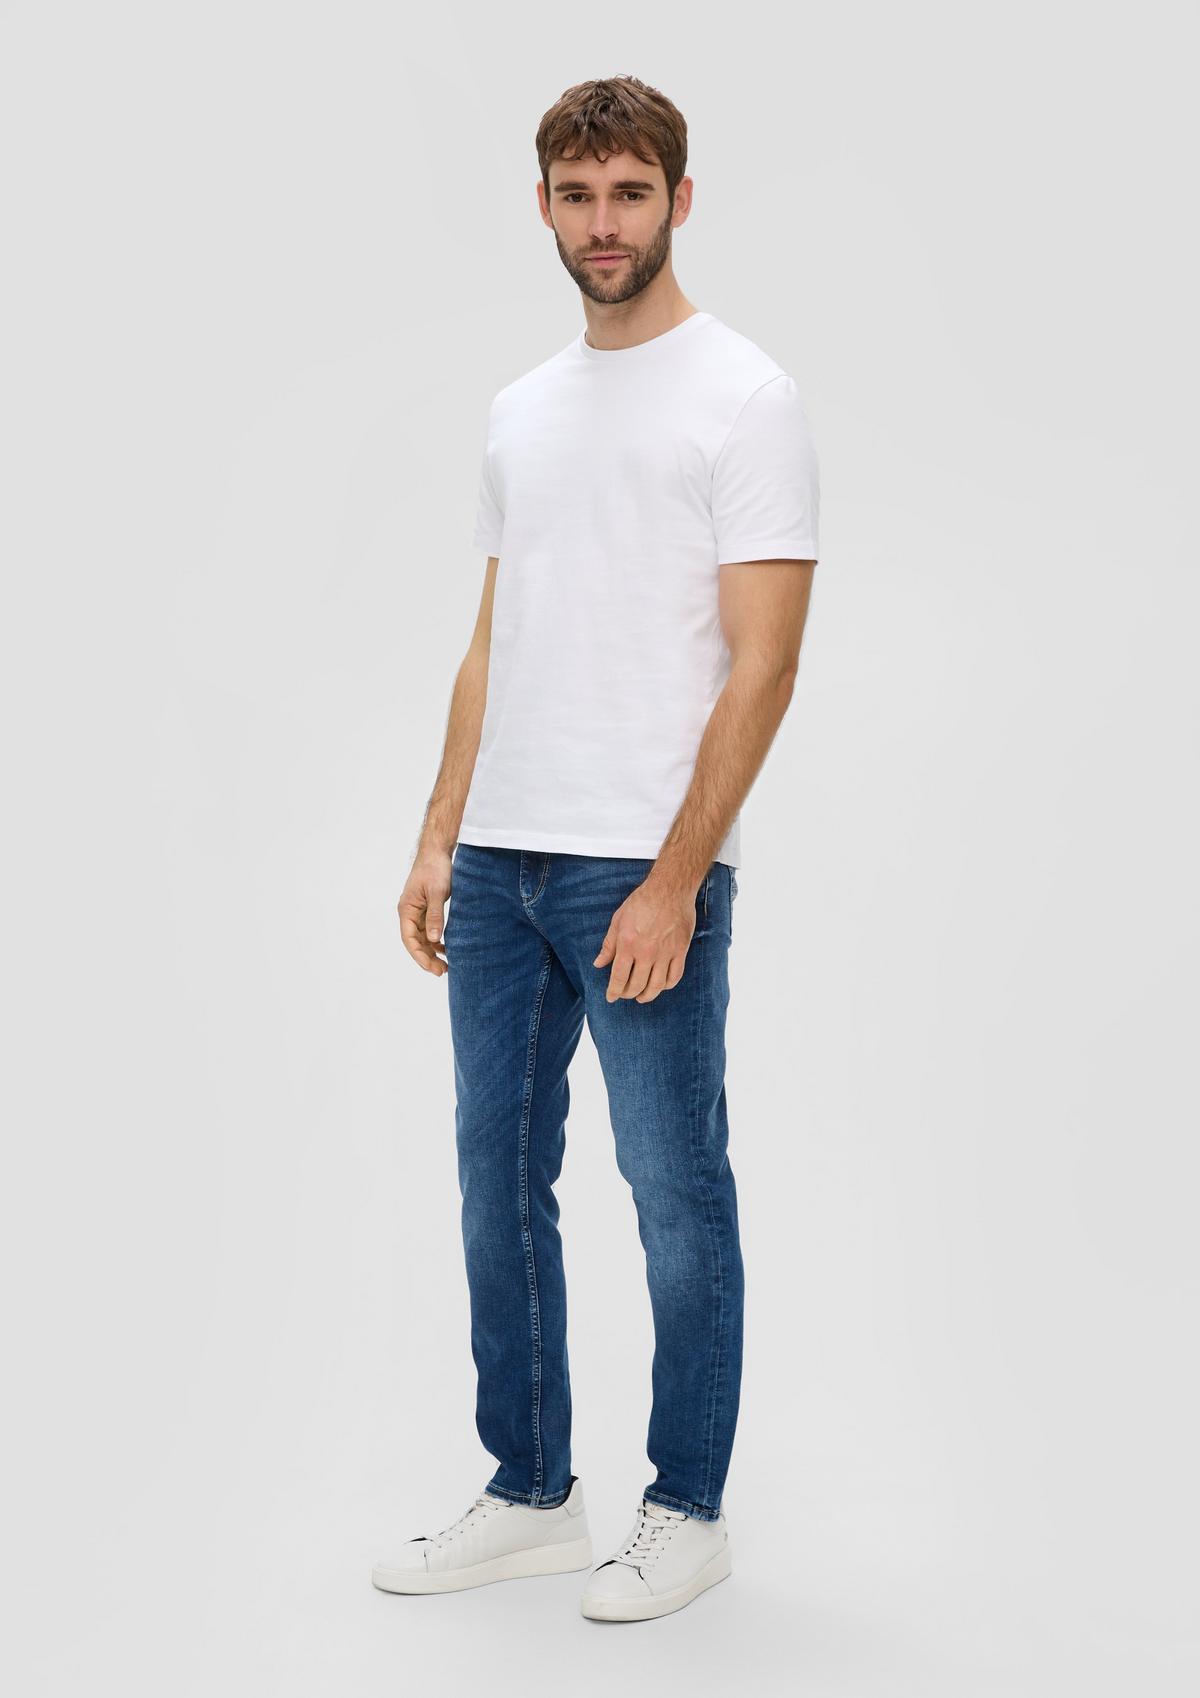 s.Oliver Jeans Nelio / slim fit / mid rise / slim leg